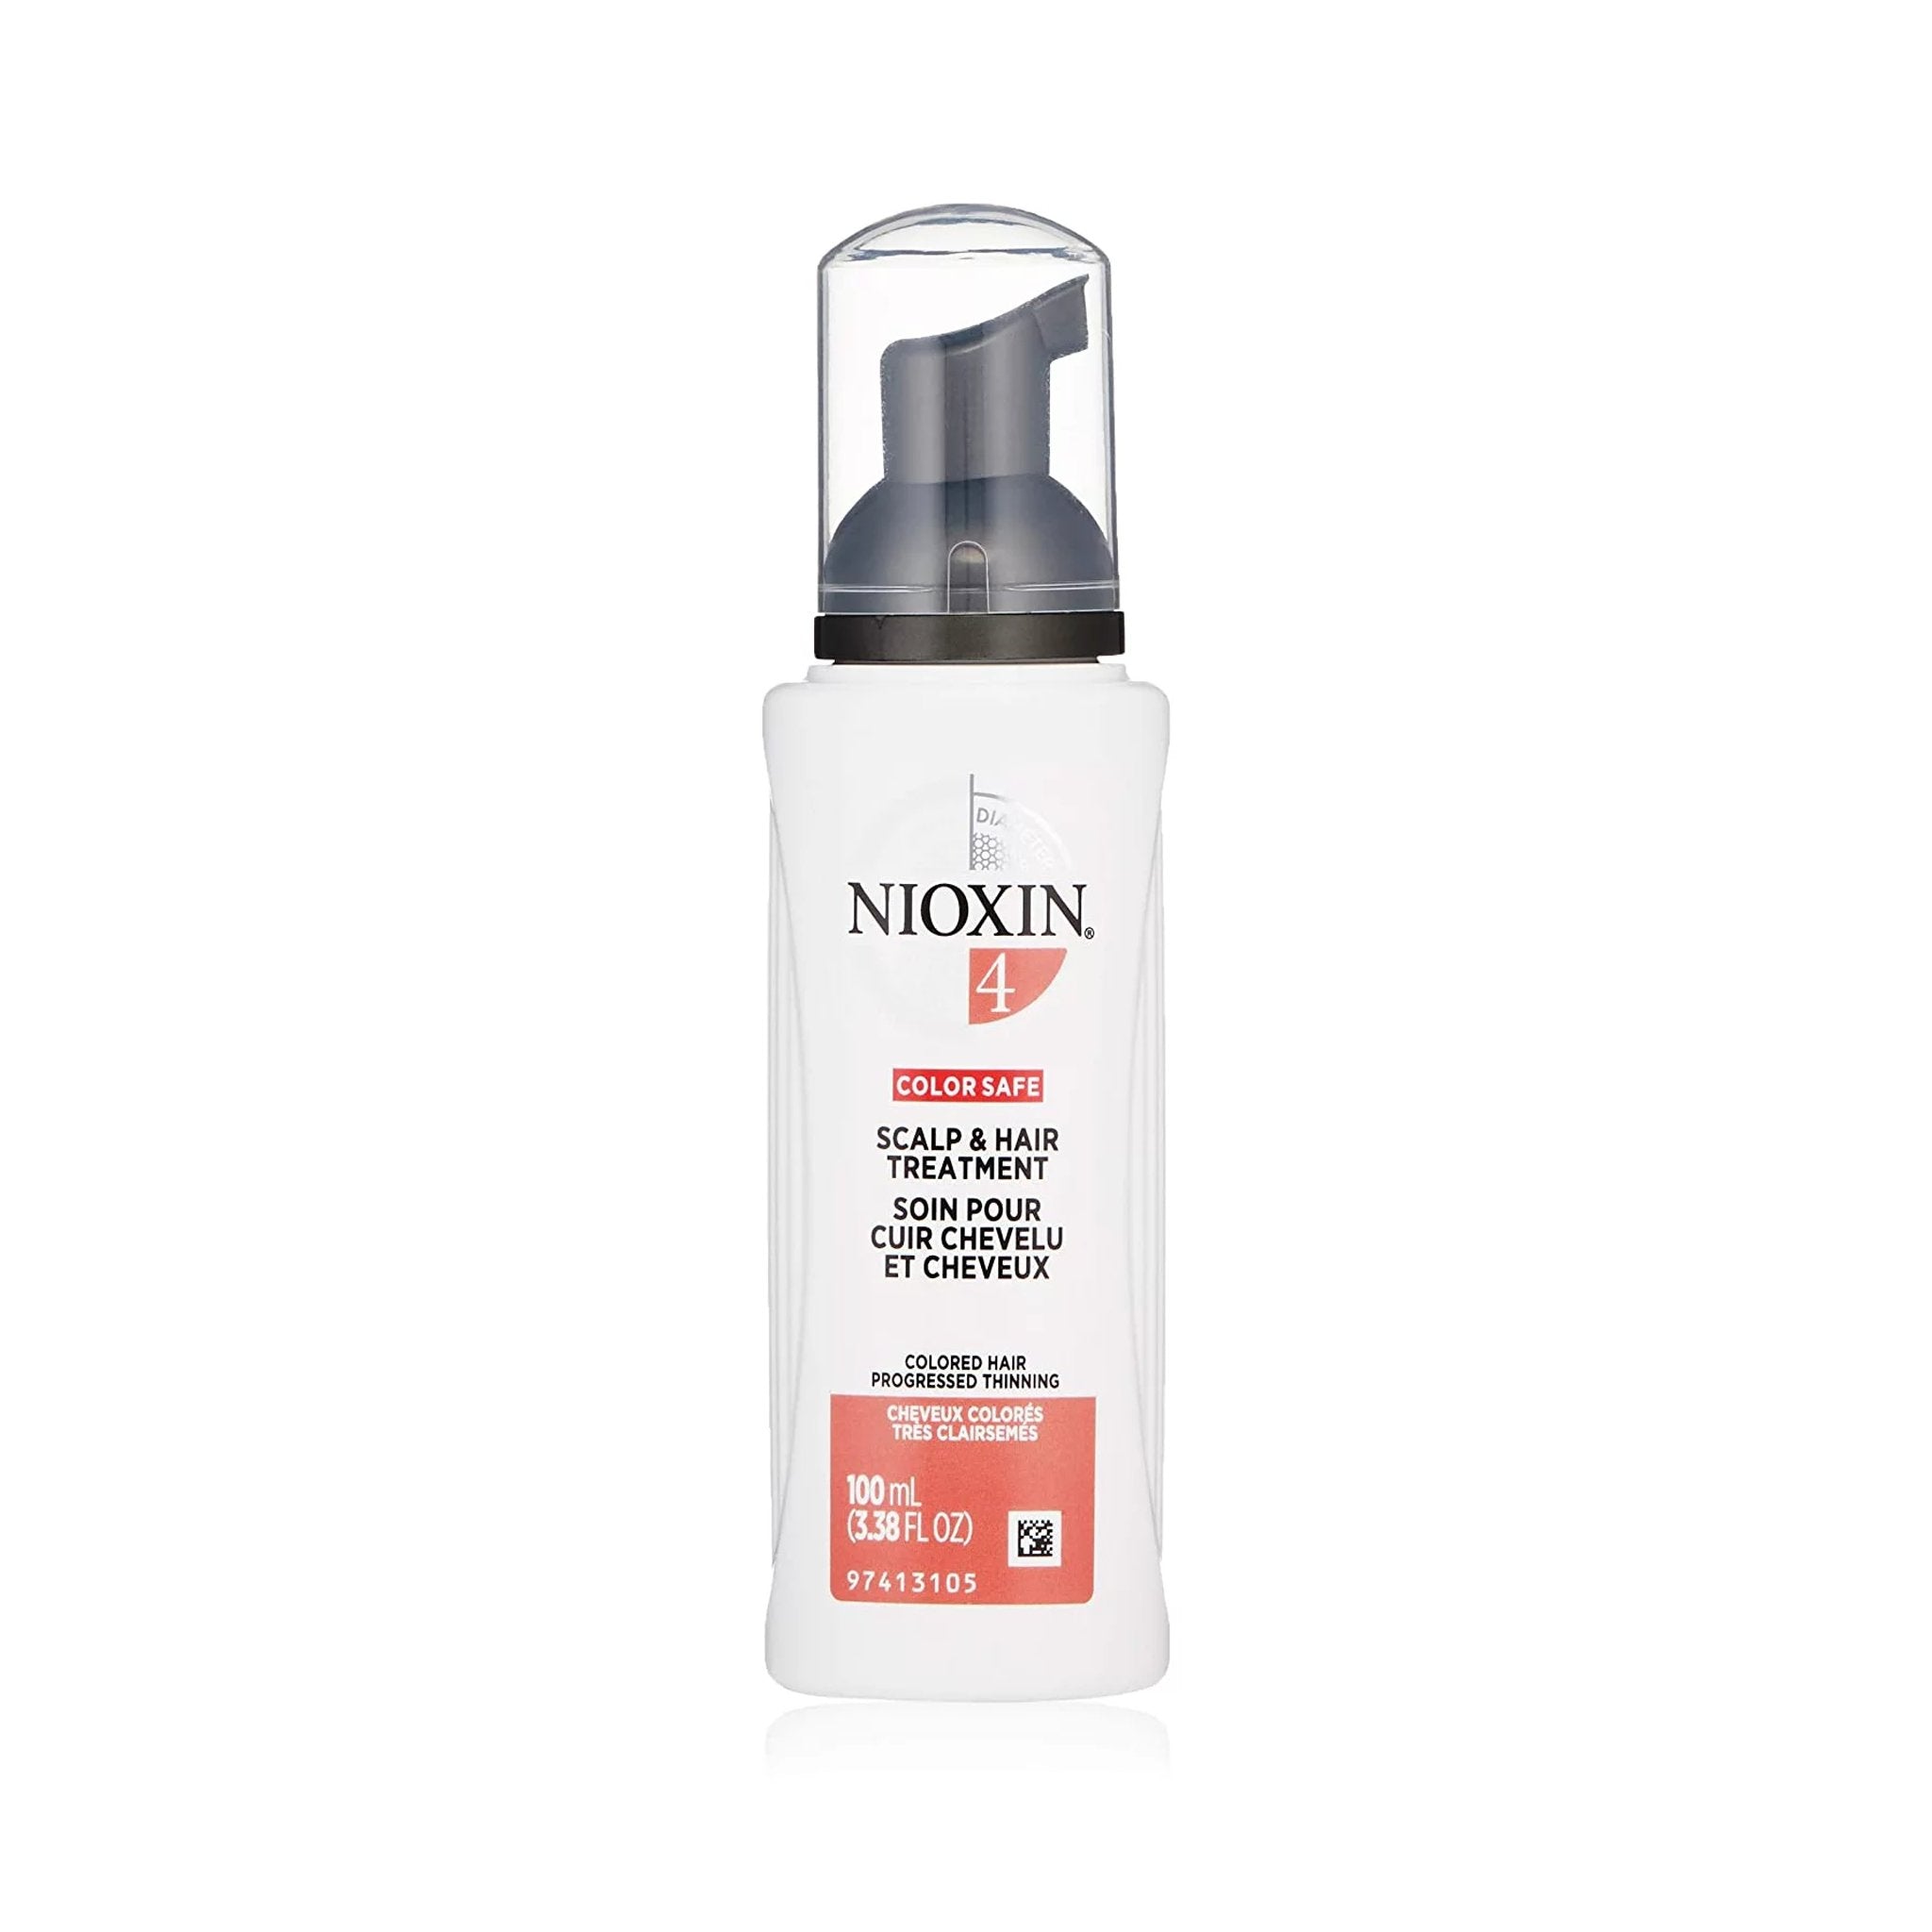 Nioxin. Traitement Capillaire Systeme 4 - 100 ml - Concept C. Shop